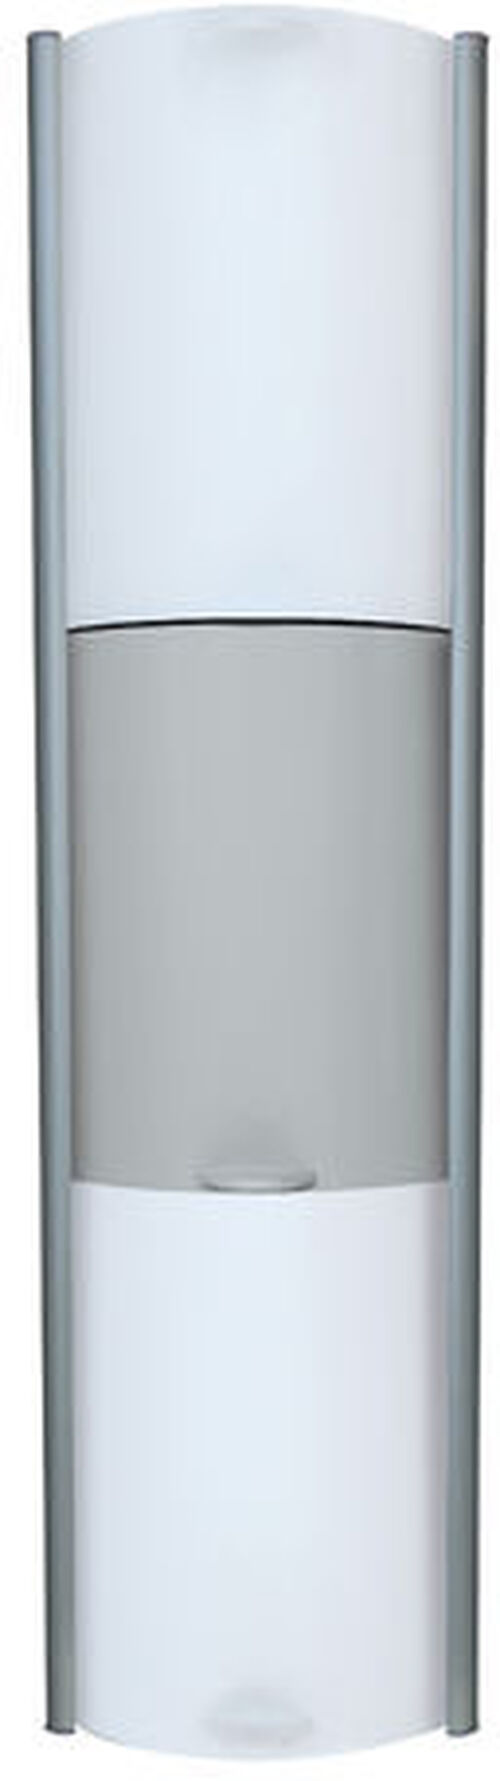 Duschenablage Duscholux Showerbox silbereloxiert weiss-grau